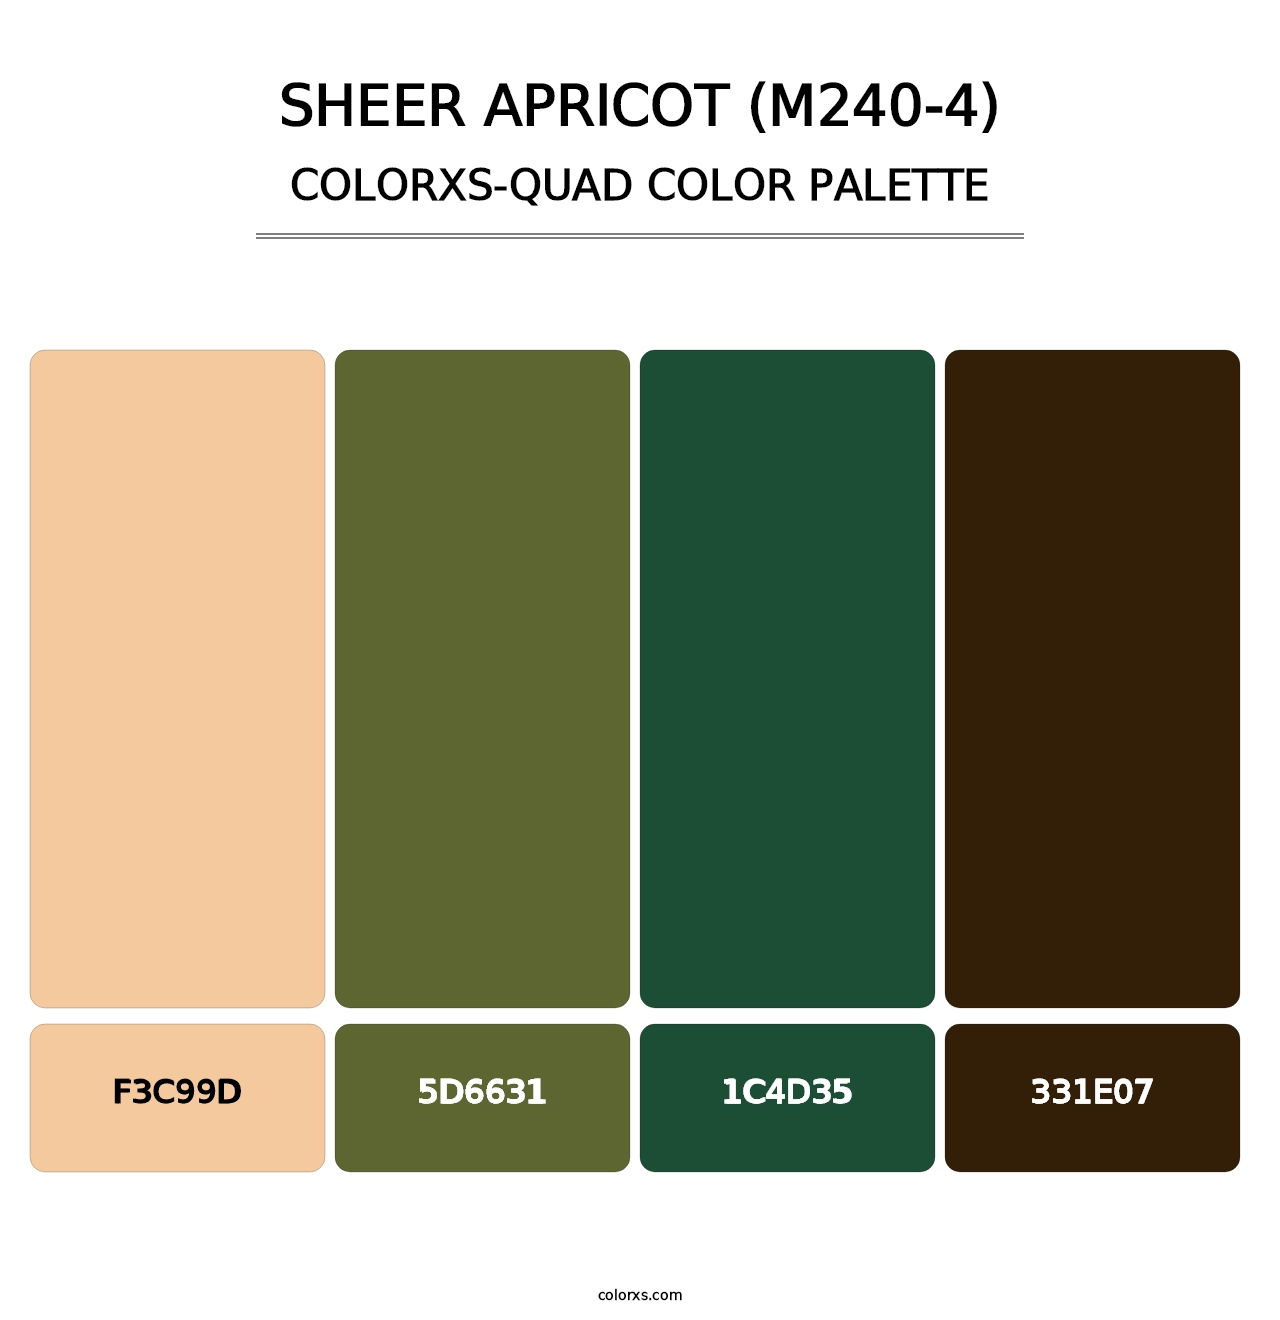 Sheer Apricot (M240-4) - Colorxs Quad Palette